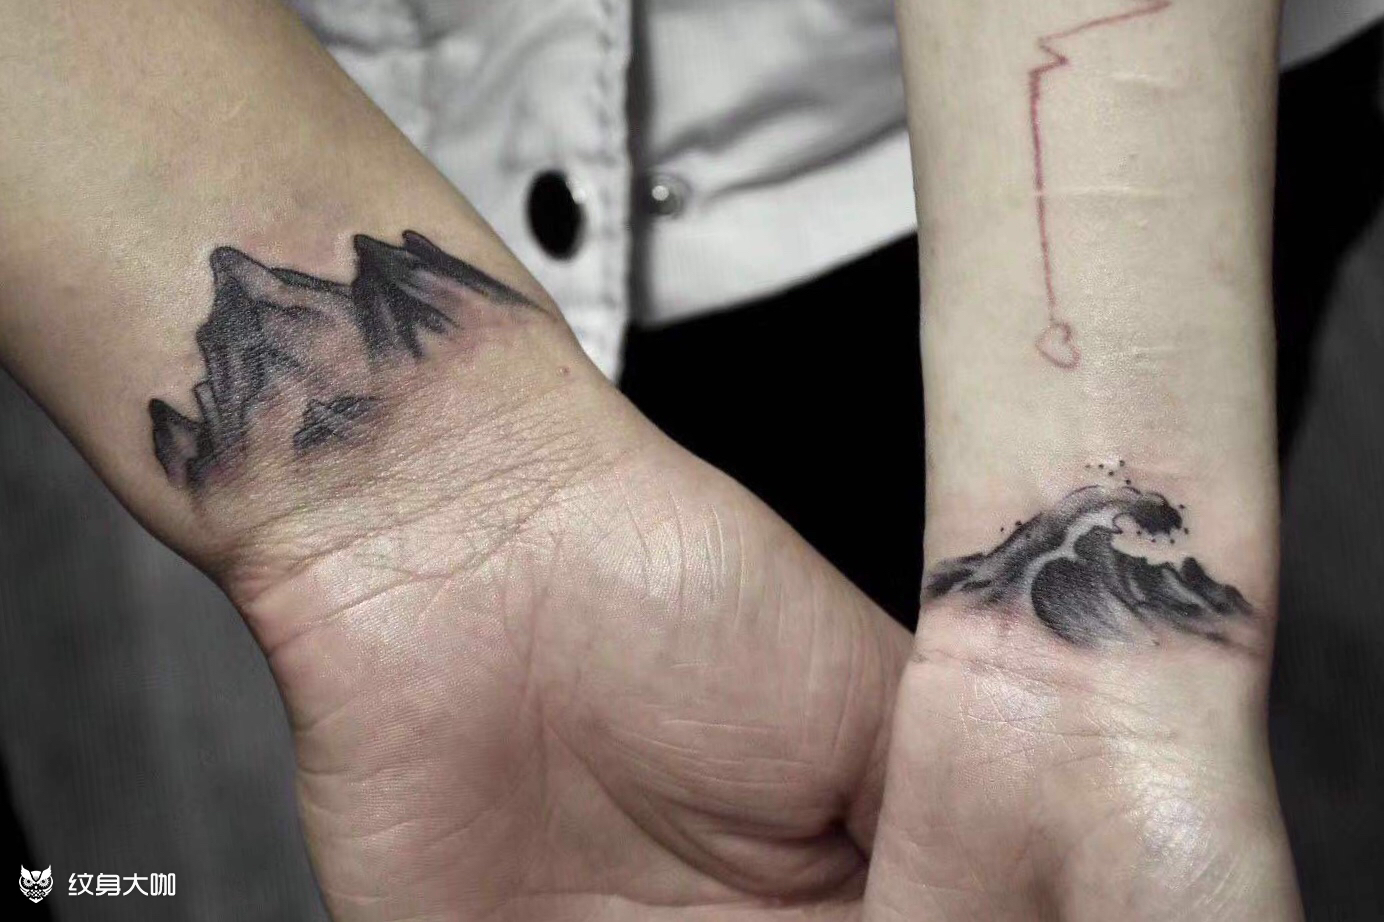 海誓山盟手腕纹身手稿图片